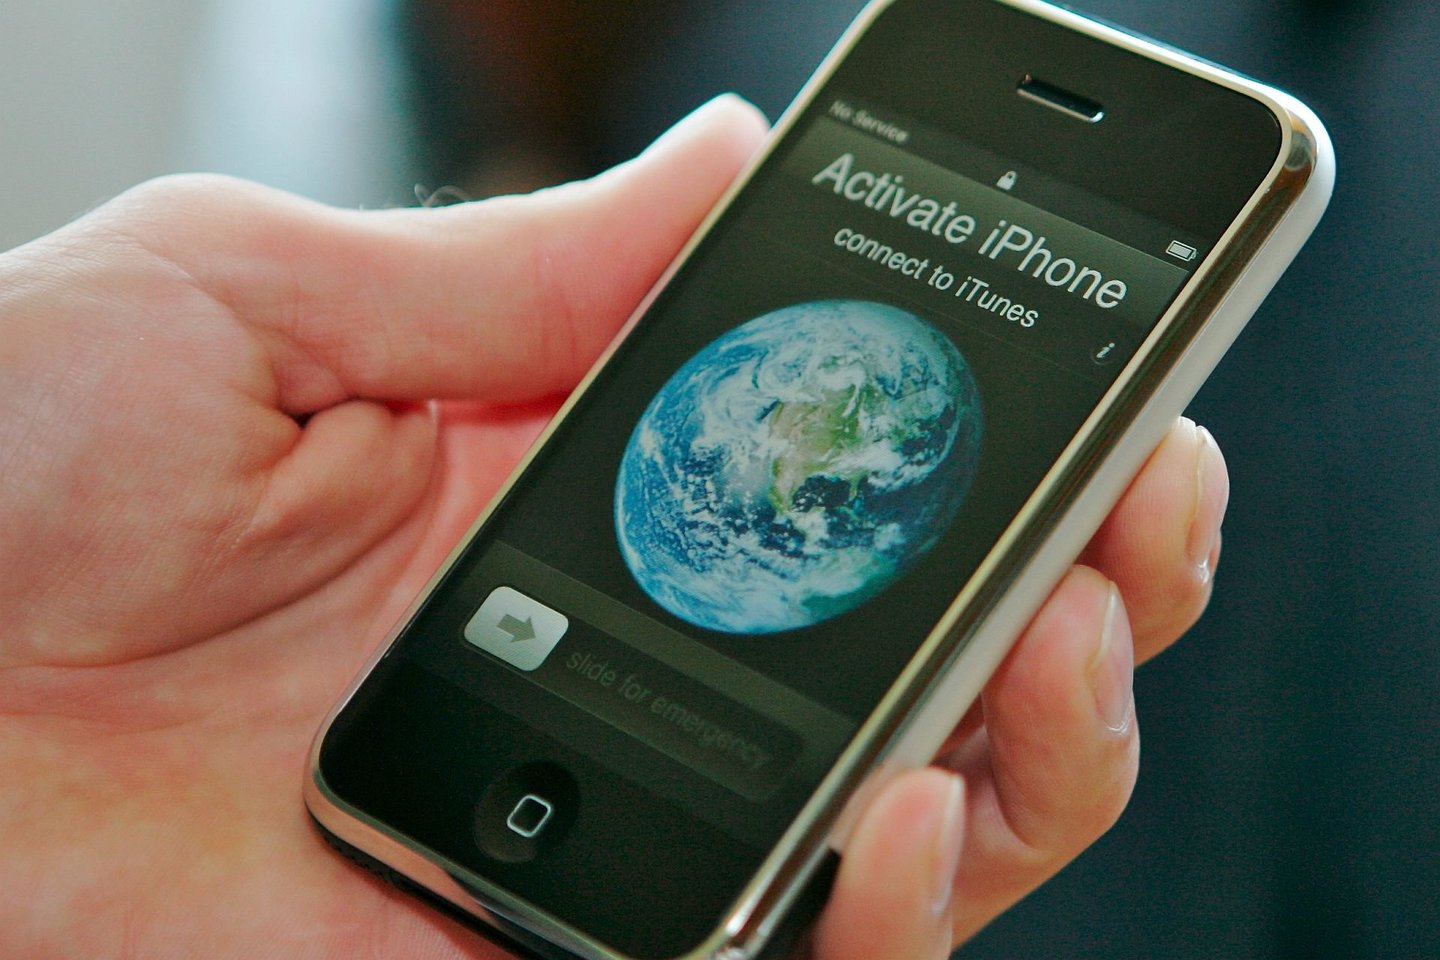  2007 metais pasaulį išvydo pirmasis „iPhone“ telefonas.<br> V. Ščiavinsko nuotr.